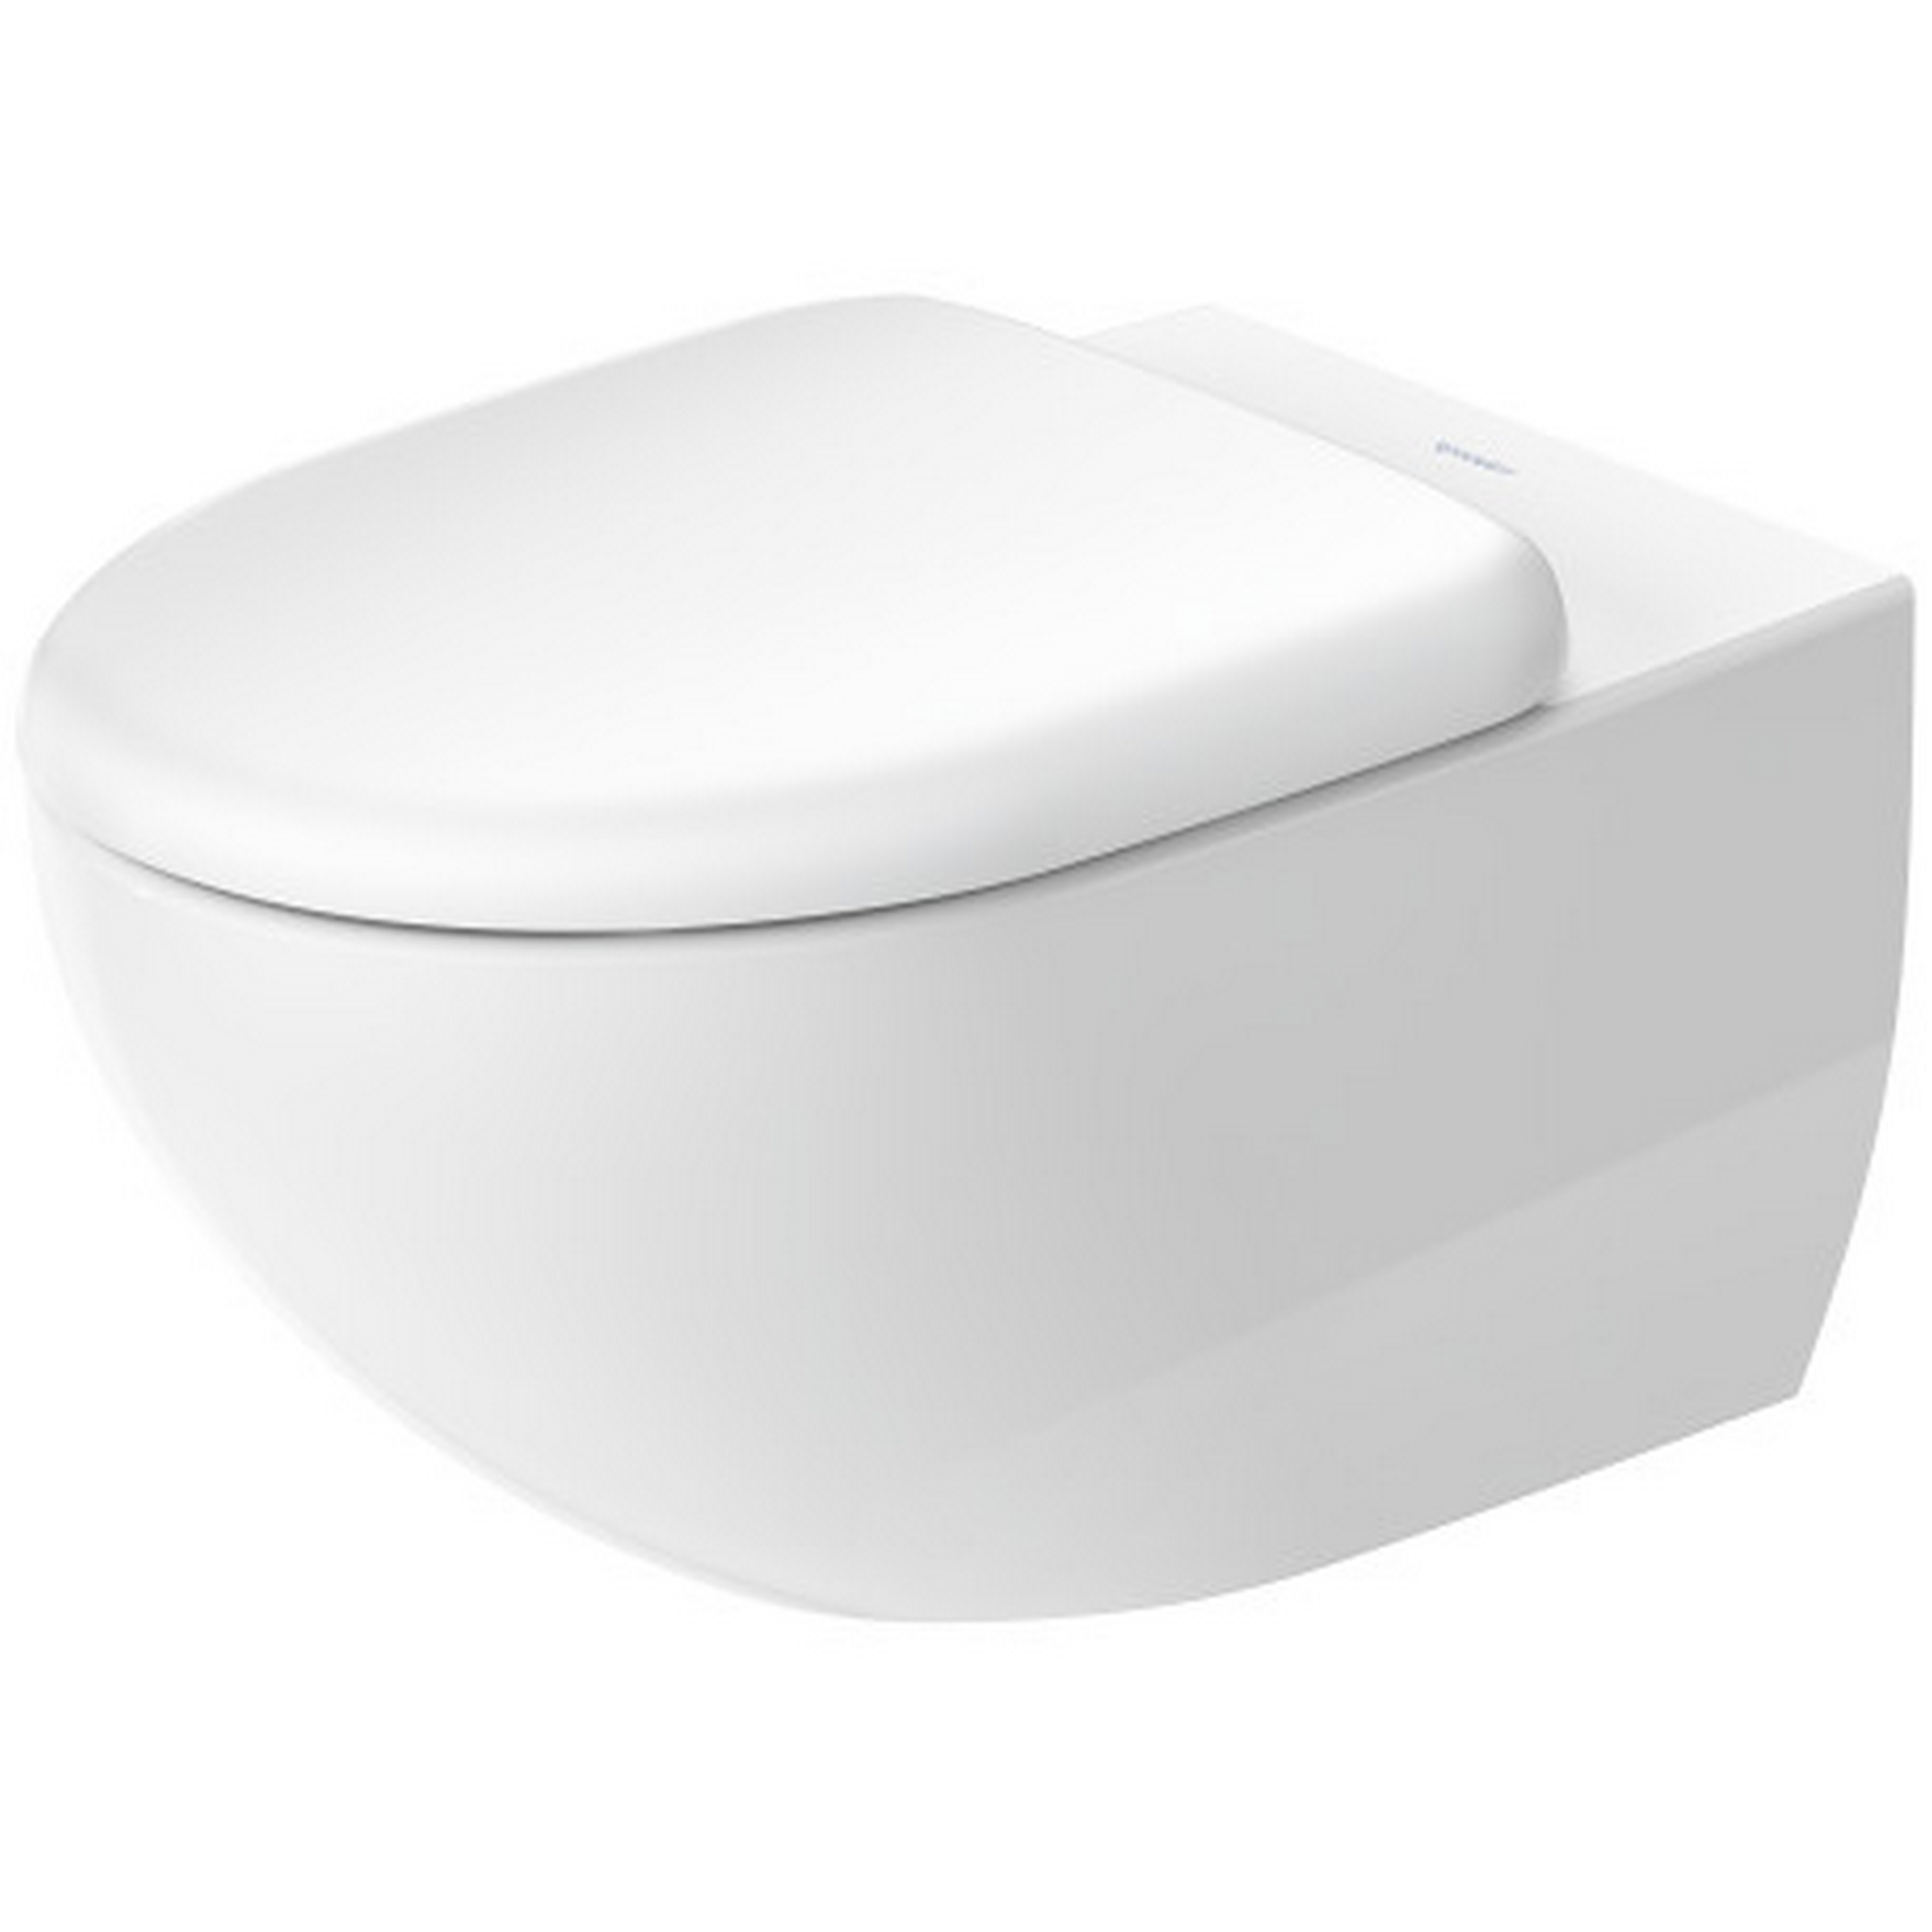 Duravit Wand-Tiefspül-WC 'Architec' mit WC-Sitz, spülrandlos, weiß